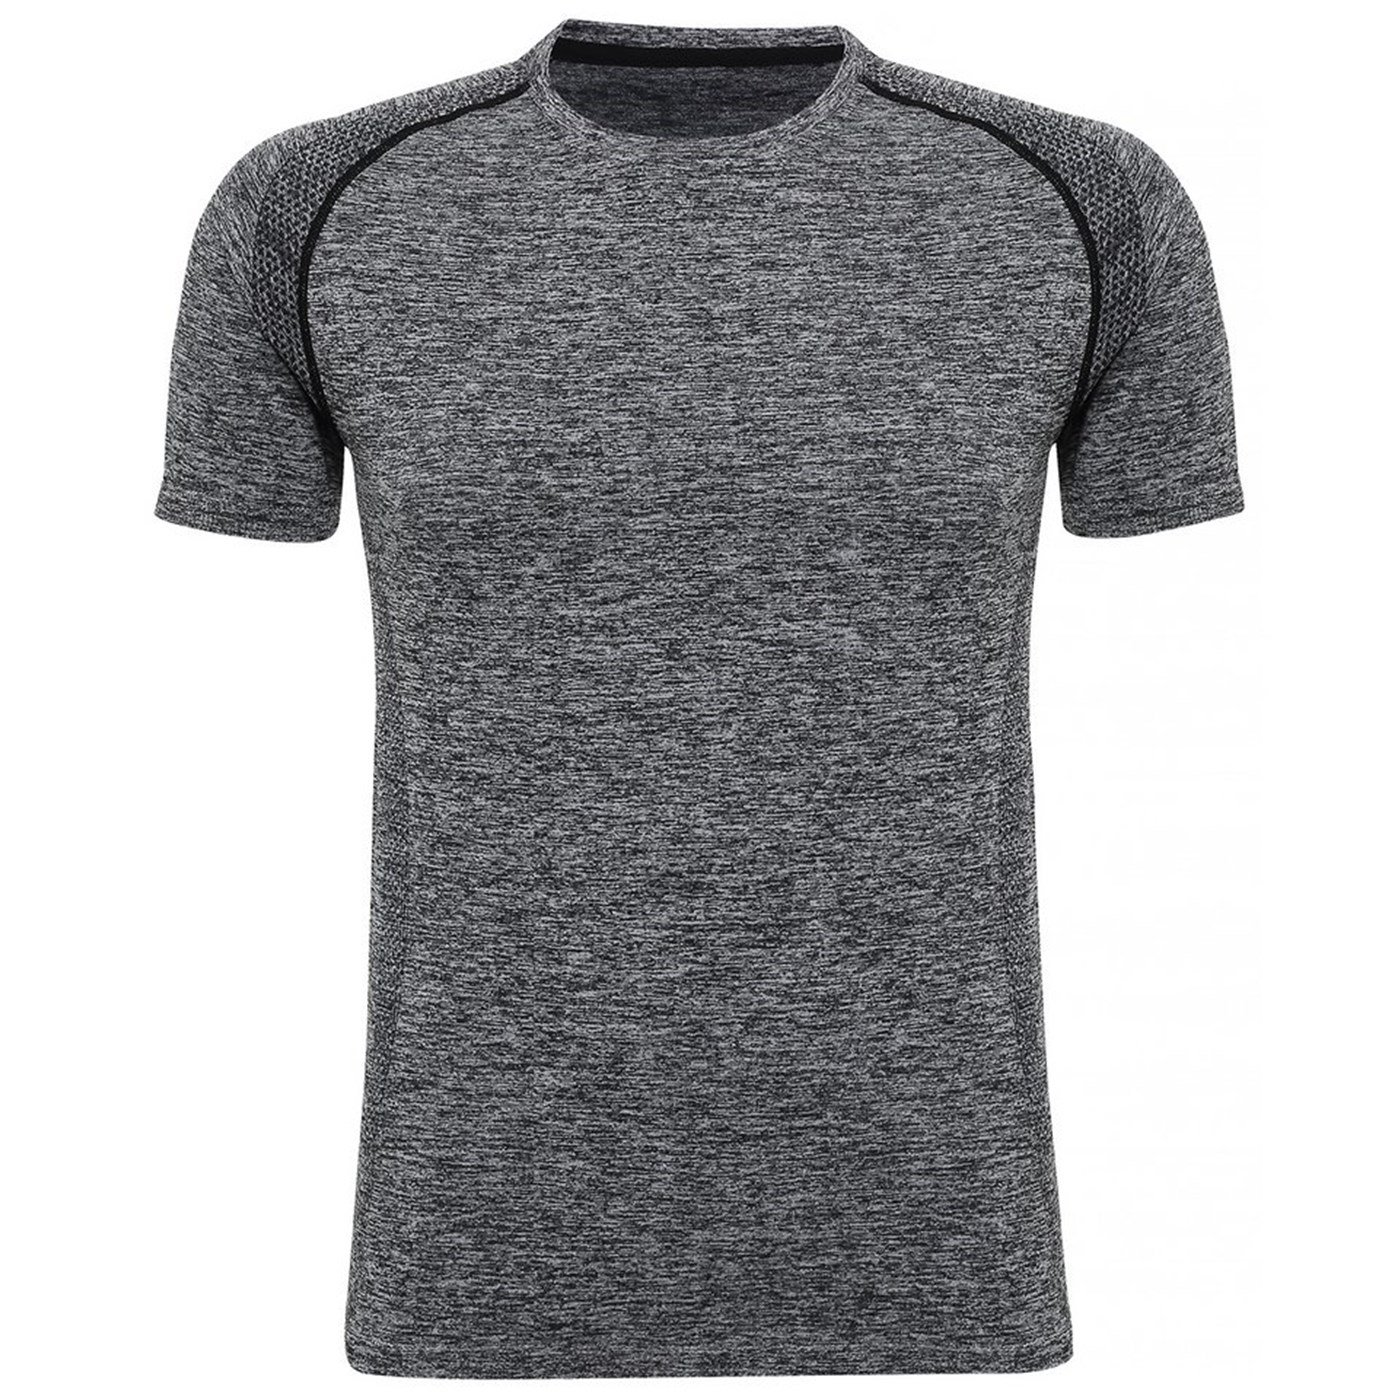 TriDri Men's Seamless '3D Fit' Multi-Sport Performance T-Shirt